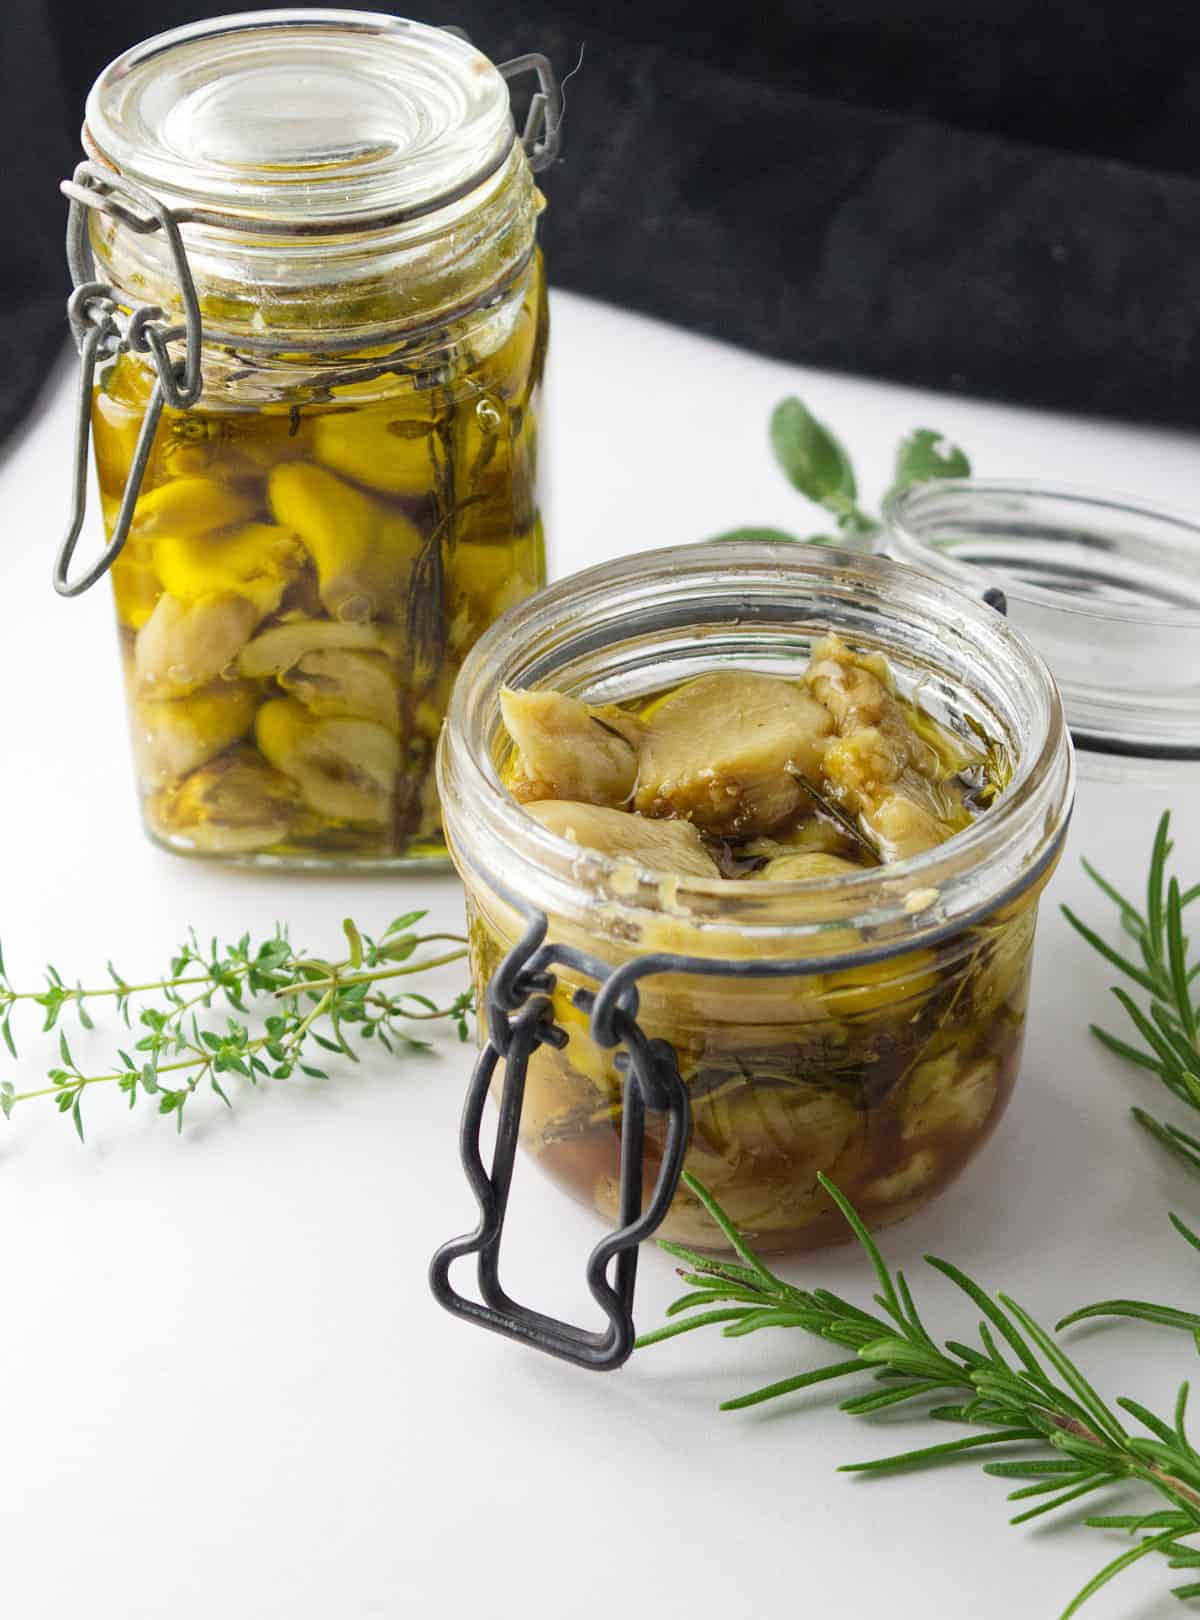 cloves of garlic in oil stored in jars.